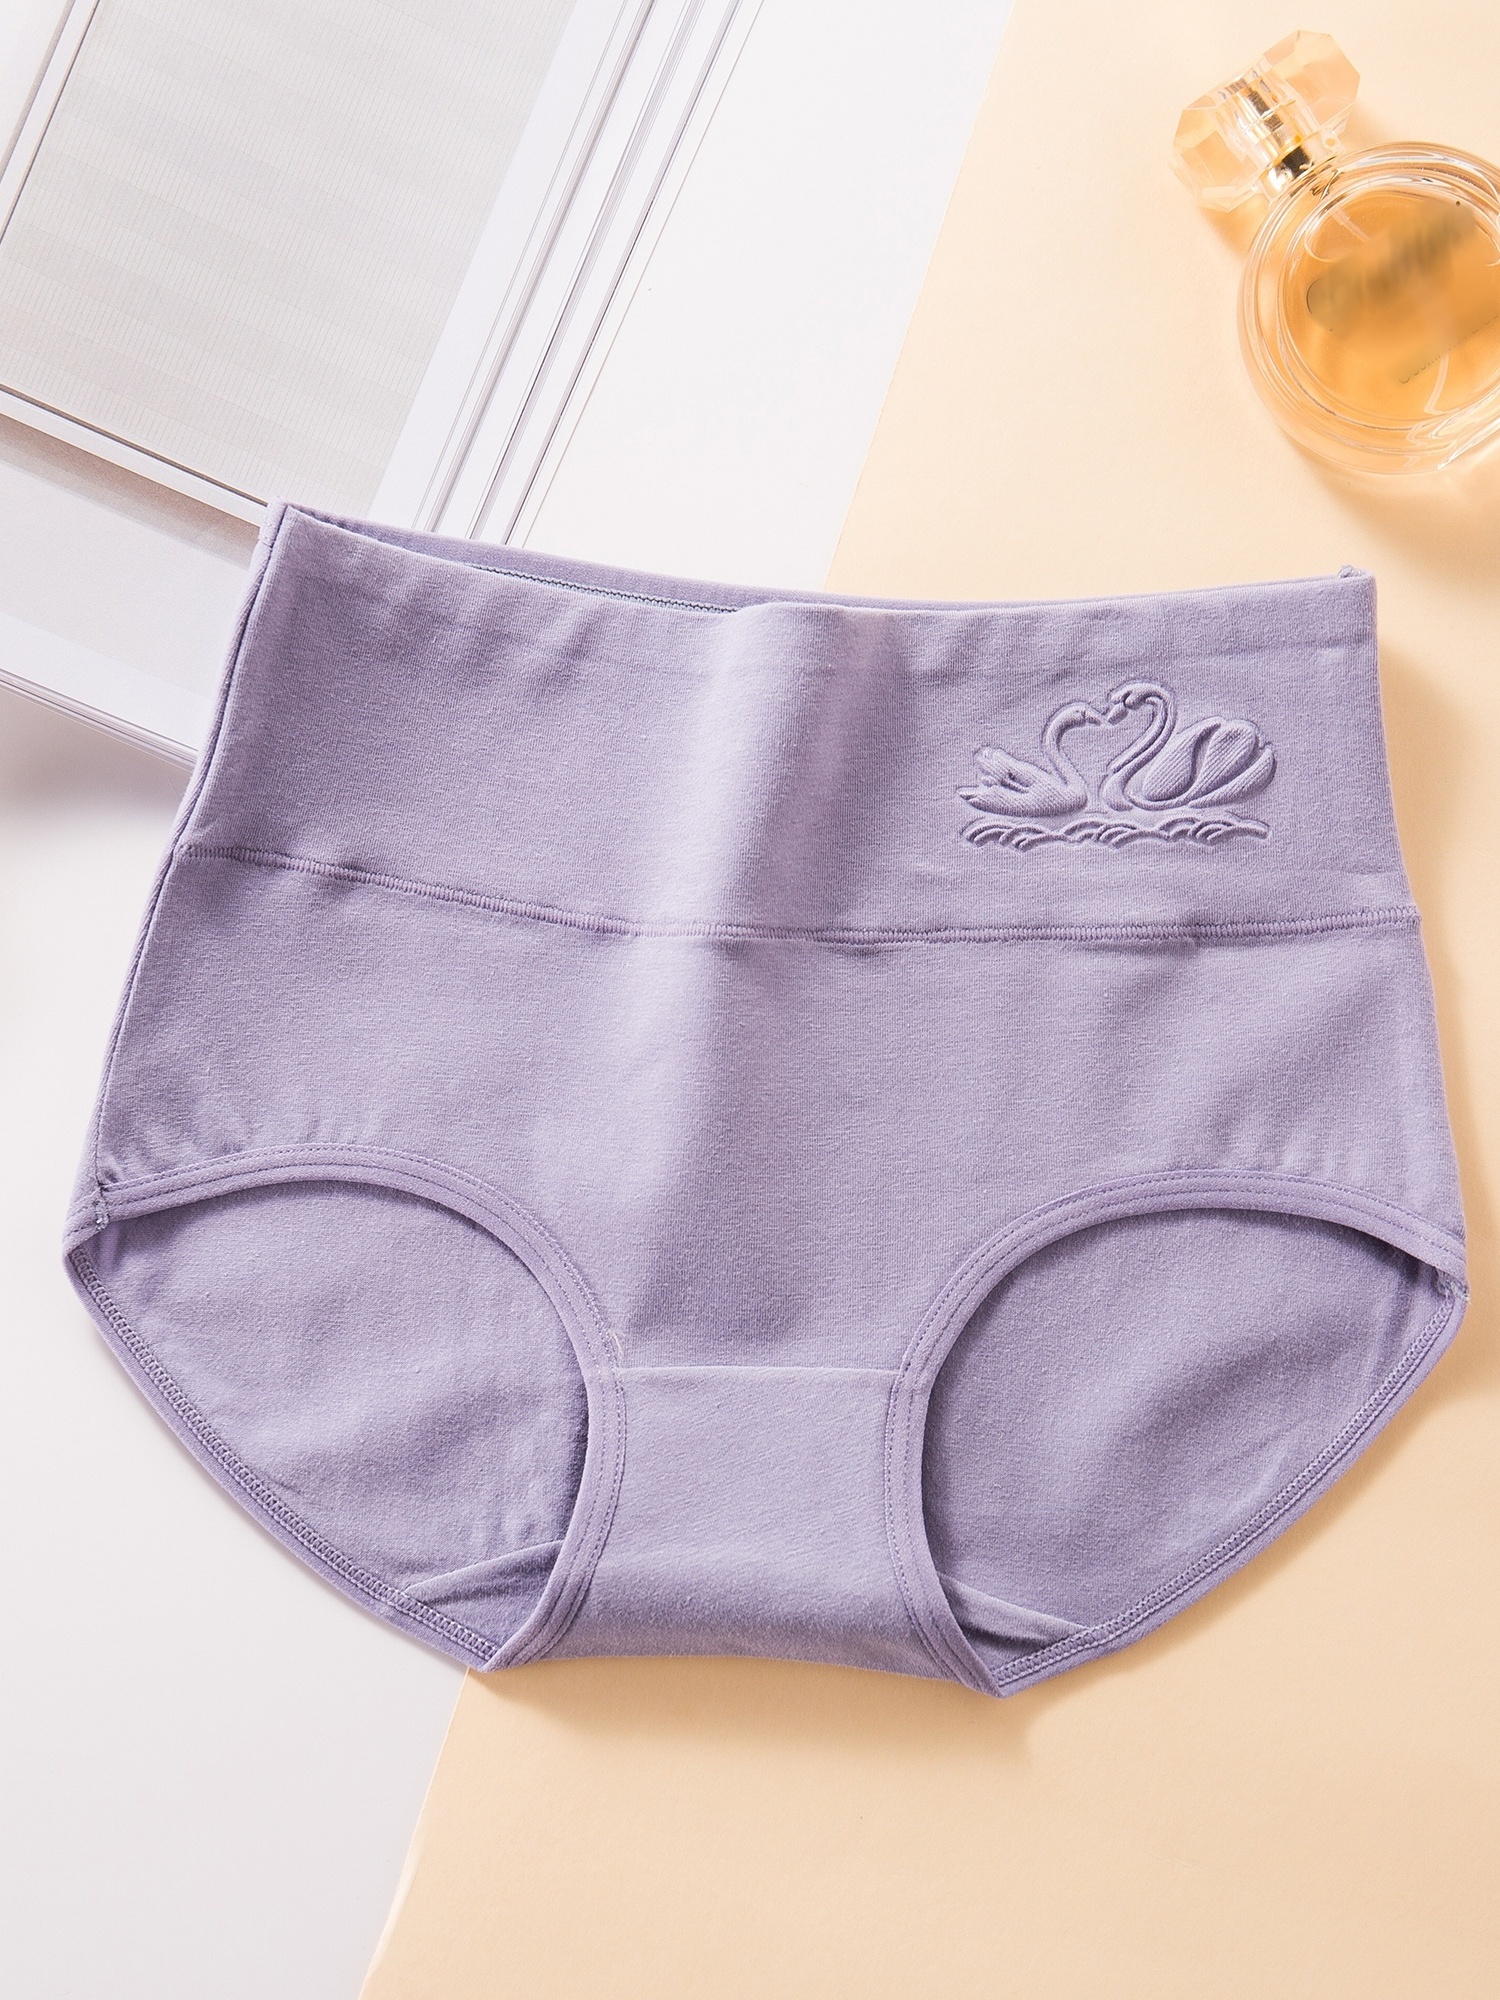 Shop Generic Trowbridge 3pcs/set High Waist Women's Panties Lingerie  Seamless Underwear Silk Satin Briefs Large Size Woman Underpants Online